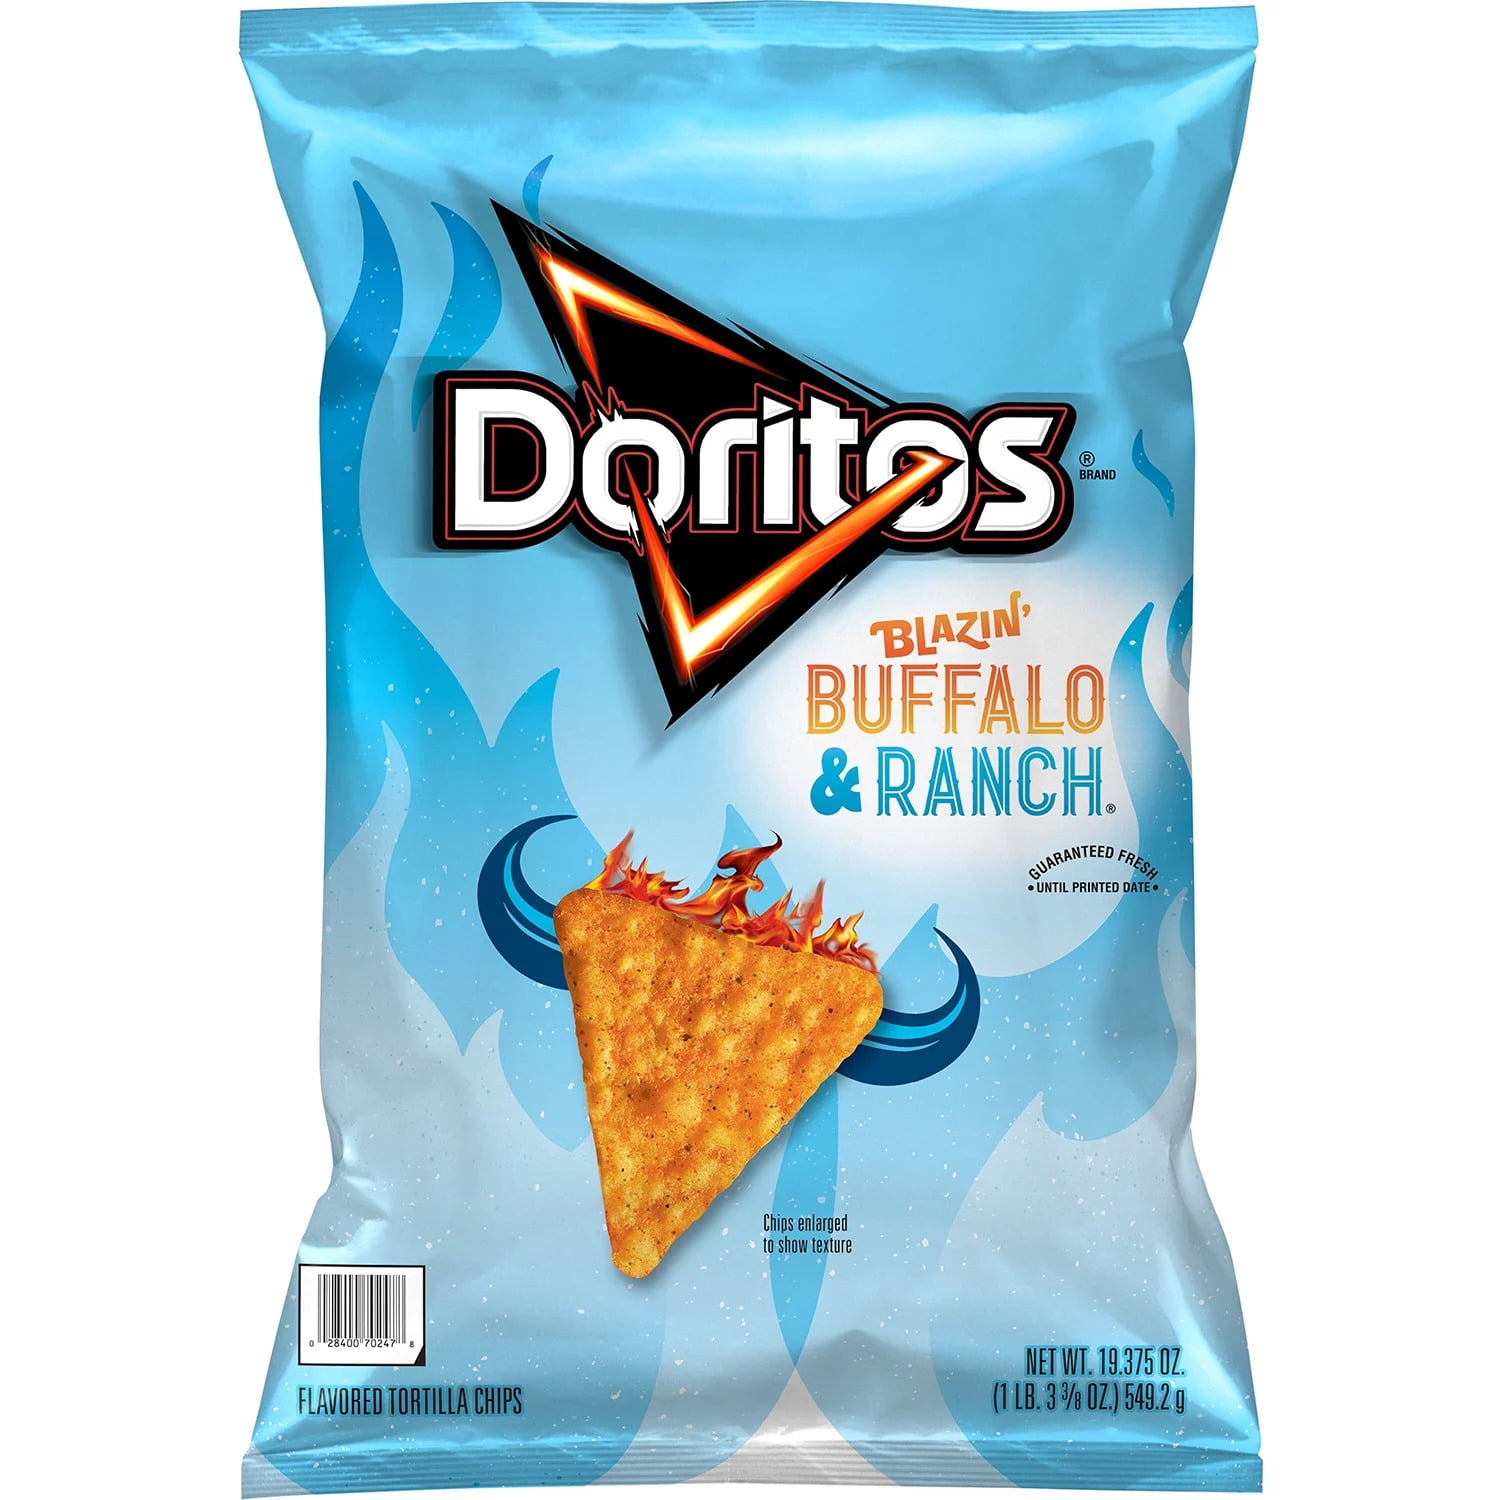 Doritos Blazin' Buffalo & Ranch® Party Size Tortilla Chips 15.5 oz. Bag, Shop